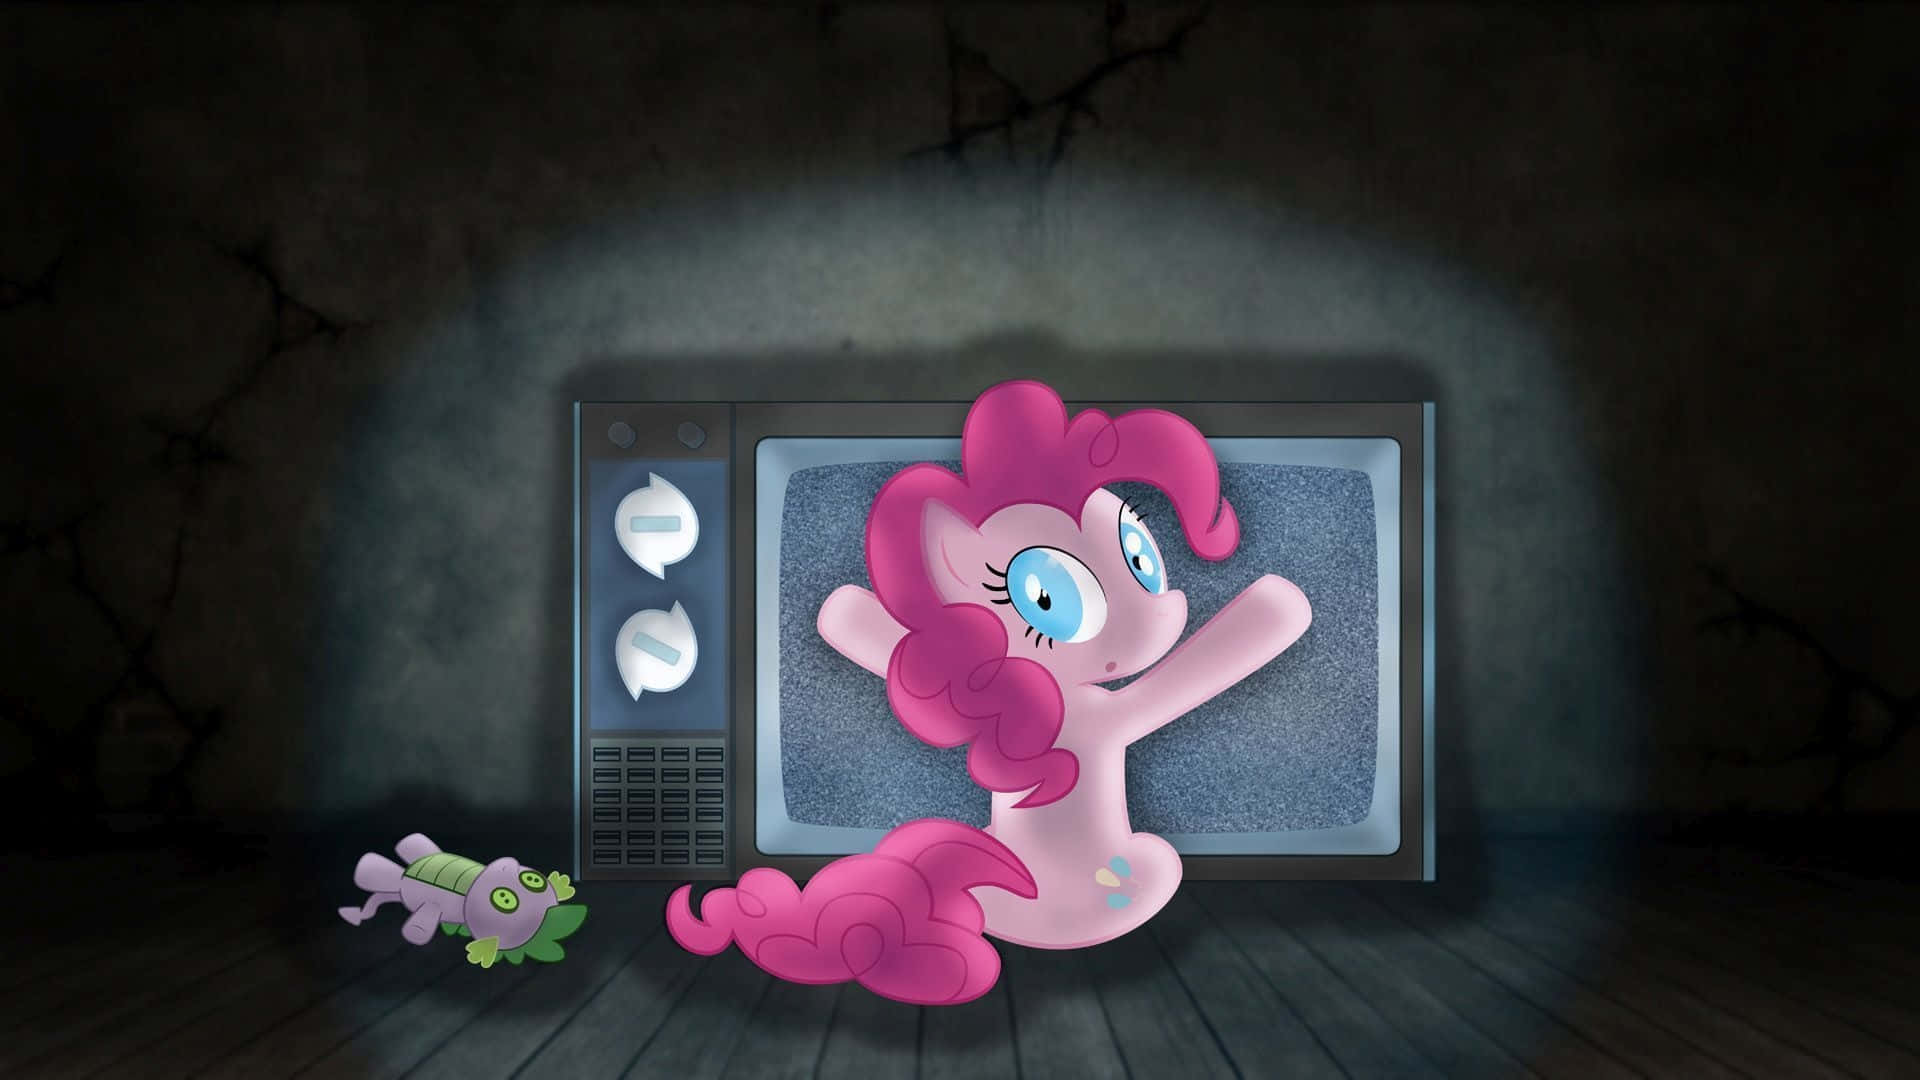 Pinkie Pie - Den Ultimata Källan Till Lycka Och Glädje.